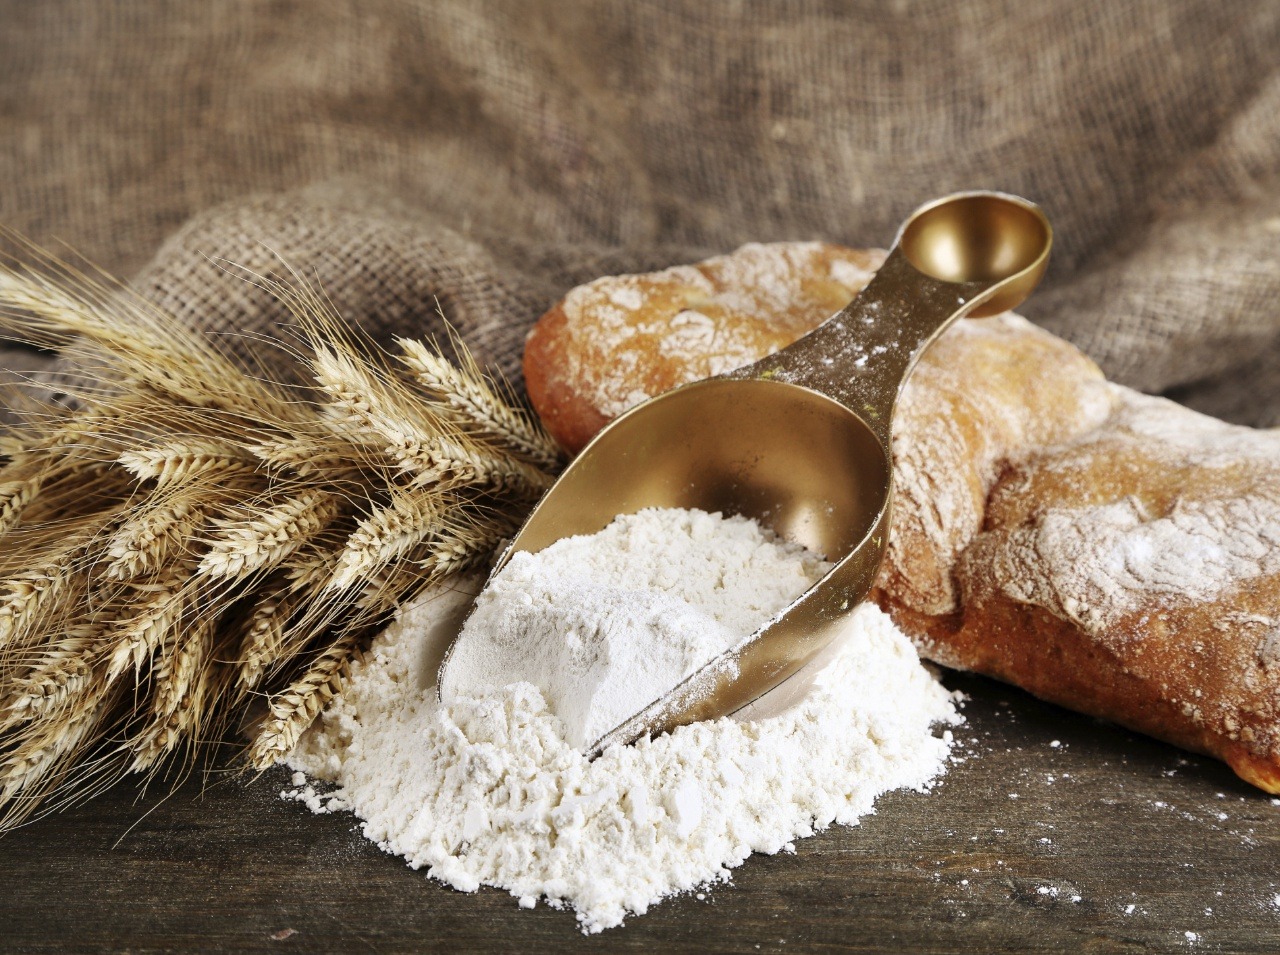 Aká múka je najvhodnejšia na pečenie dobrého chleba? Rozhodnite sa pre kvalitu.